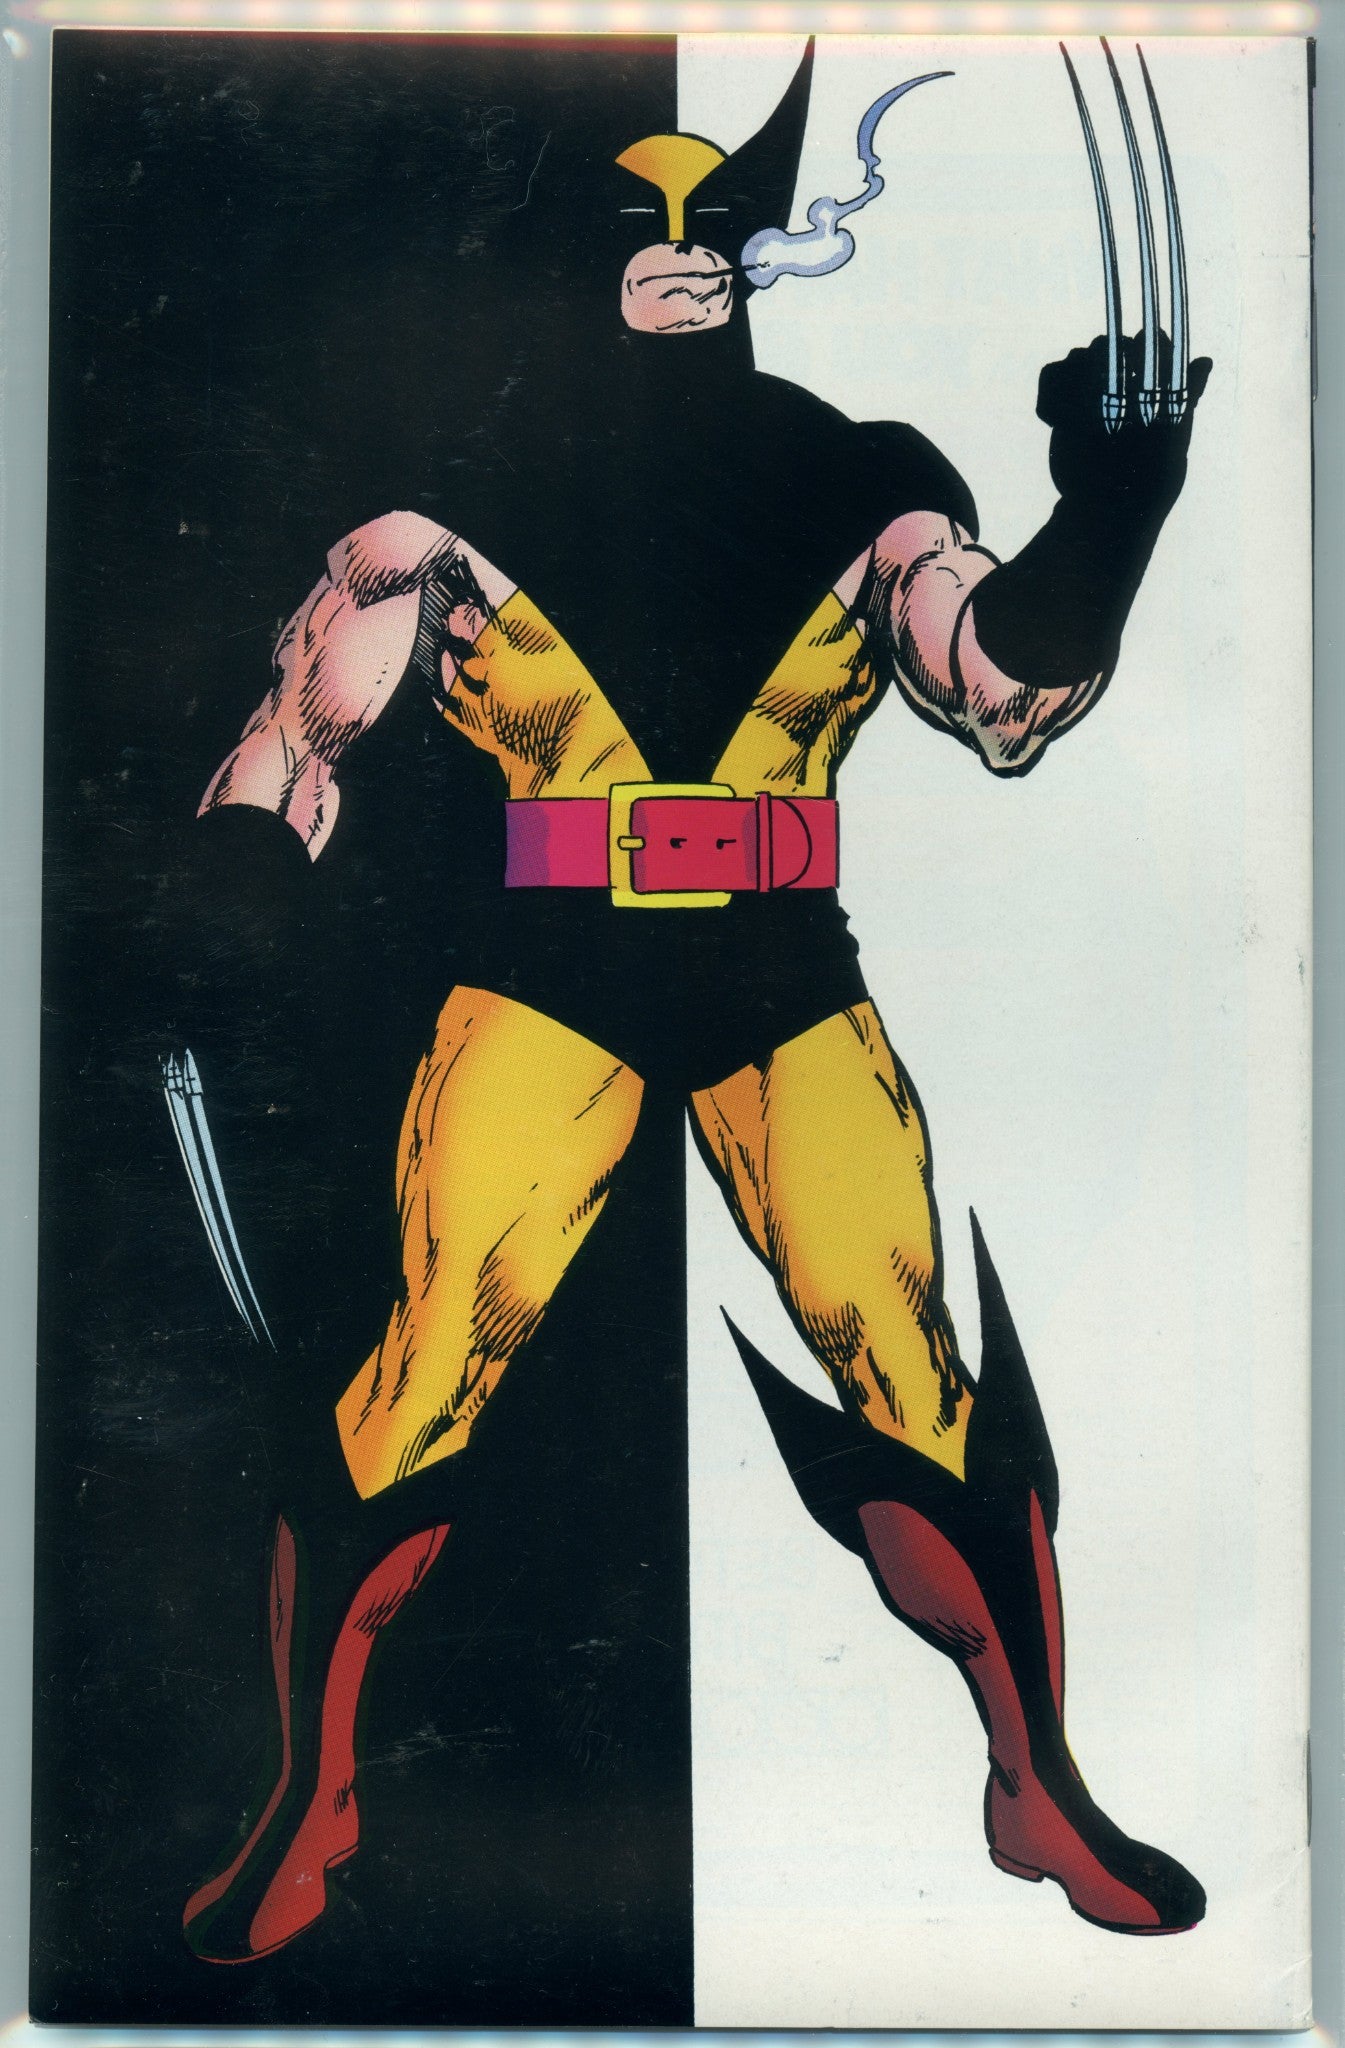 Wolverine 1 (Nov 1988) PGX (9.2)